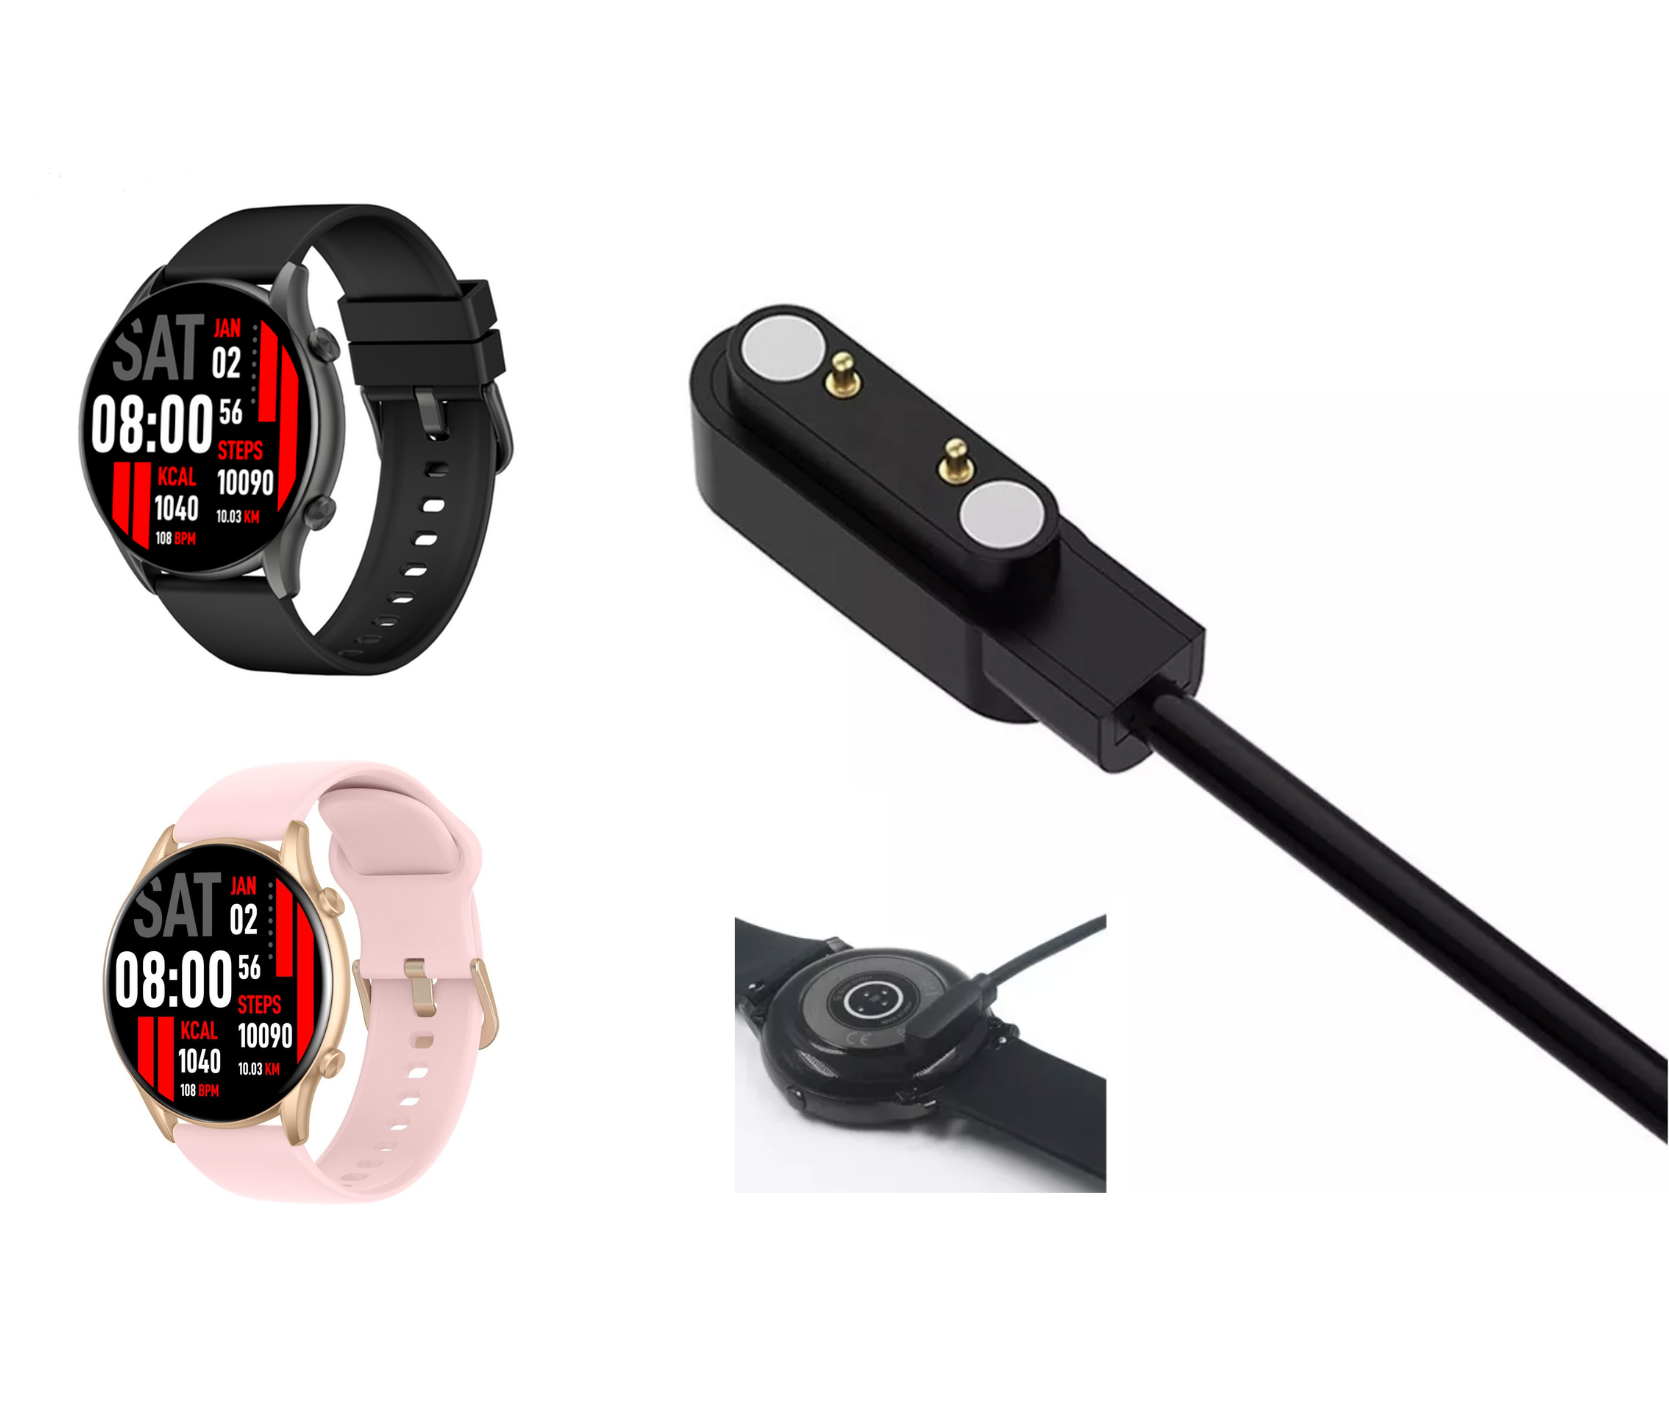 Cable Cargador Smartwatch Kieslect Kr2